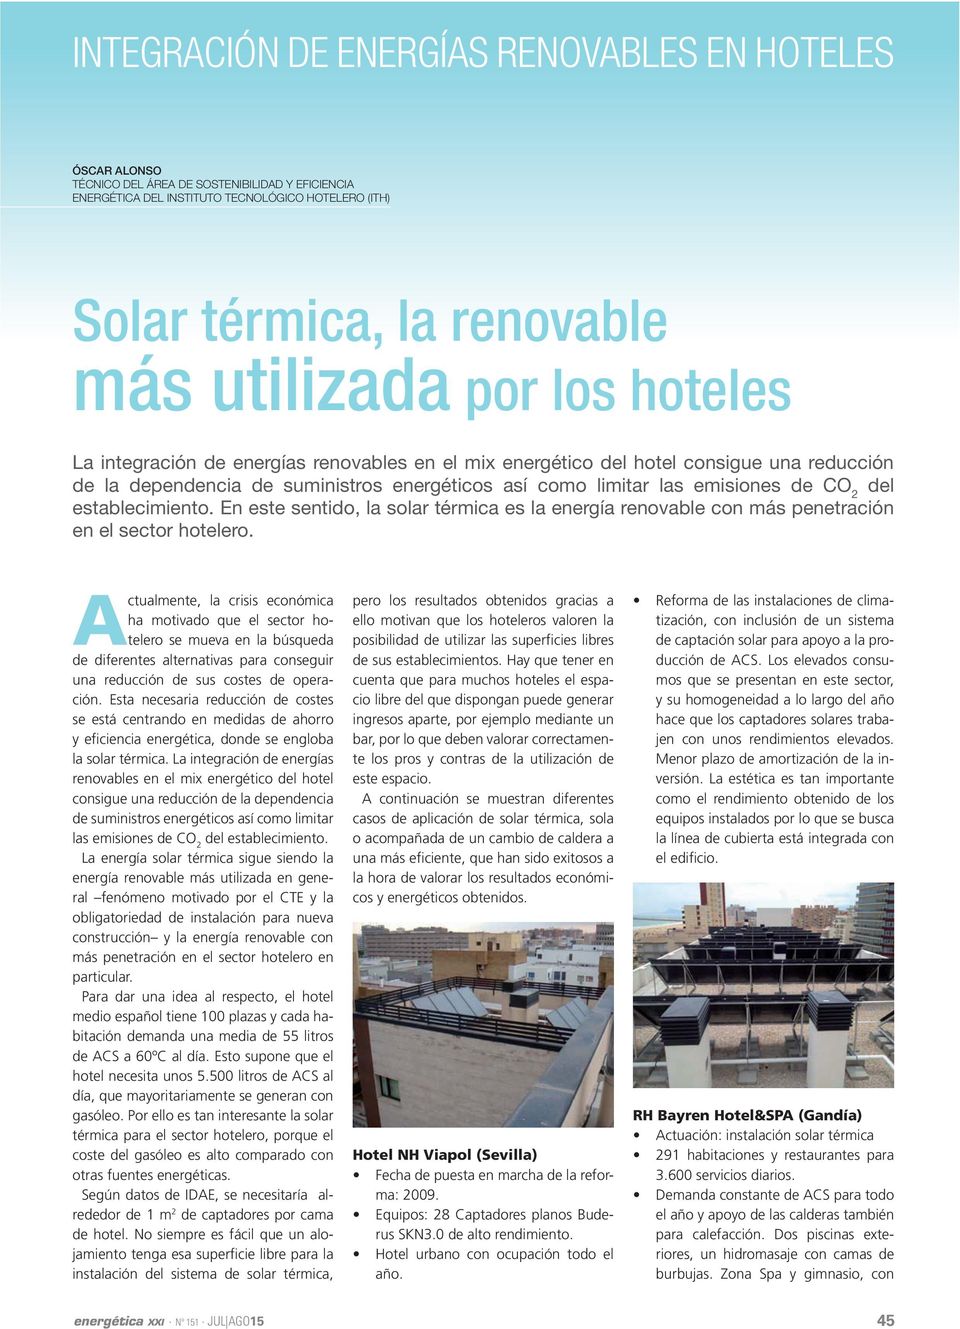 En este sentido, la solar térmica es la energía renovable con más penetración en el sector hotelero.